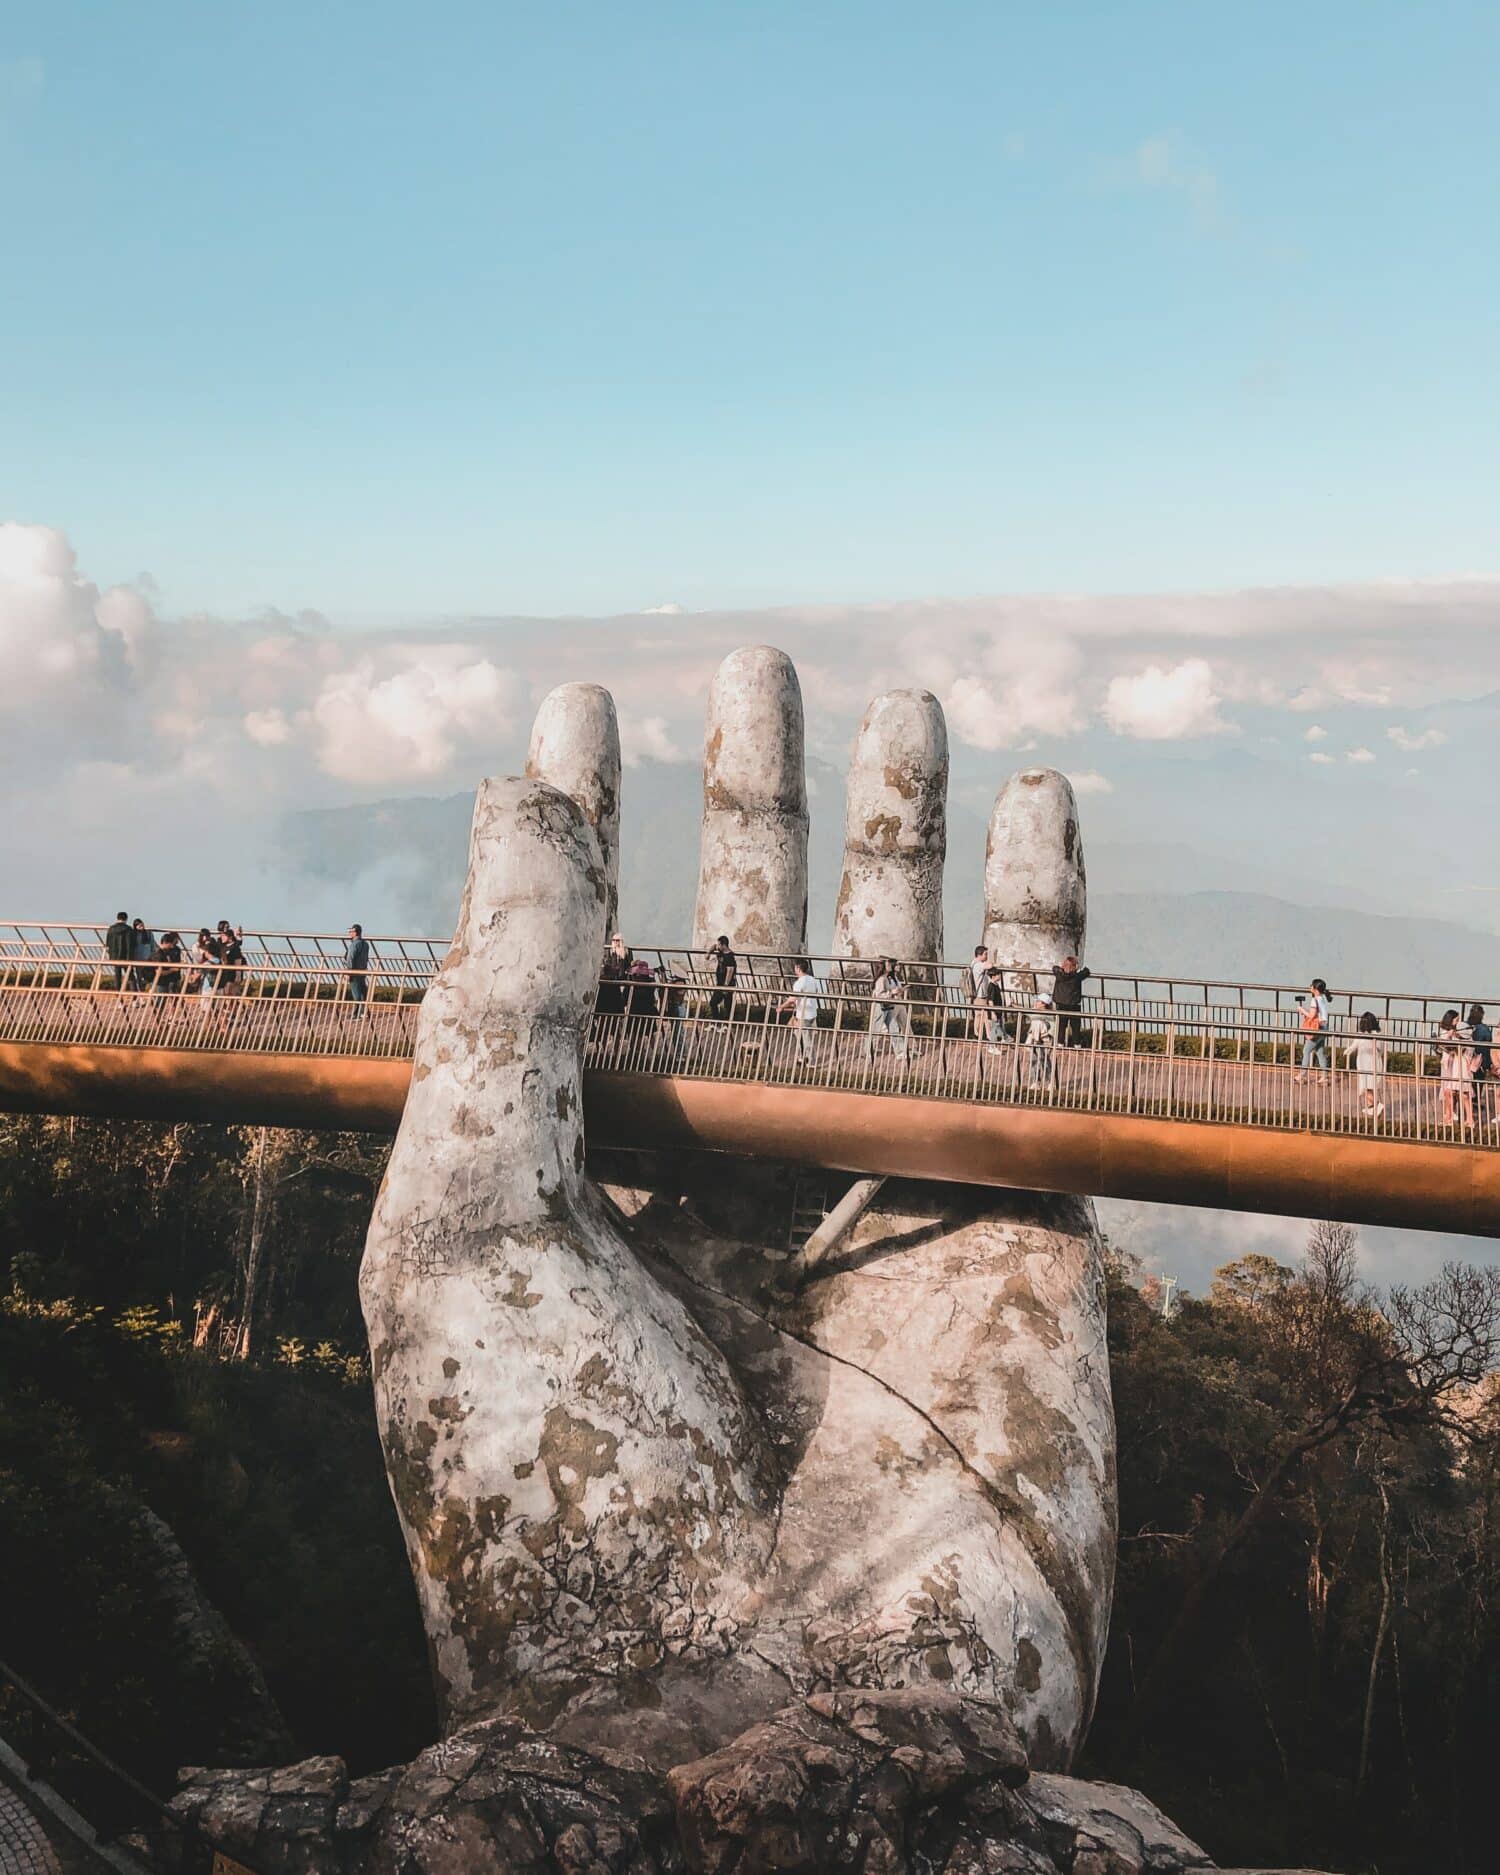 vista de uma ponte, a Golden Bridge, em Danang, com várias pessoas tirando fotos e andando por ela, com vegetação abaixo e um céu azul com nuvens acima, a ponte é "segurada" por uma mão gigantesca de pedra branca, para ilustrar o post de chip celular Vietnã